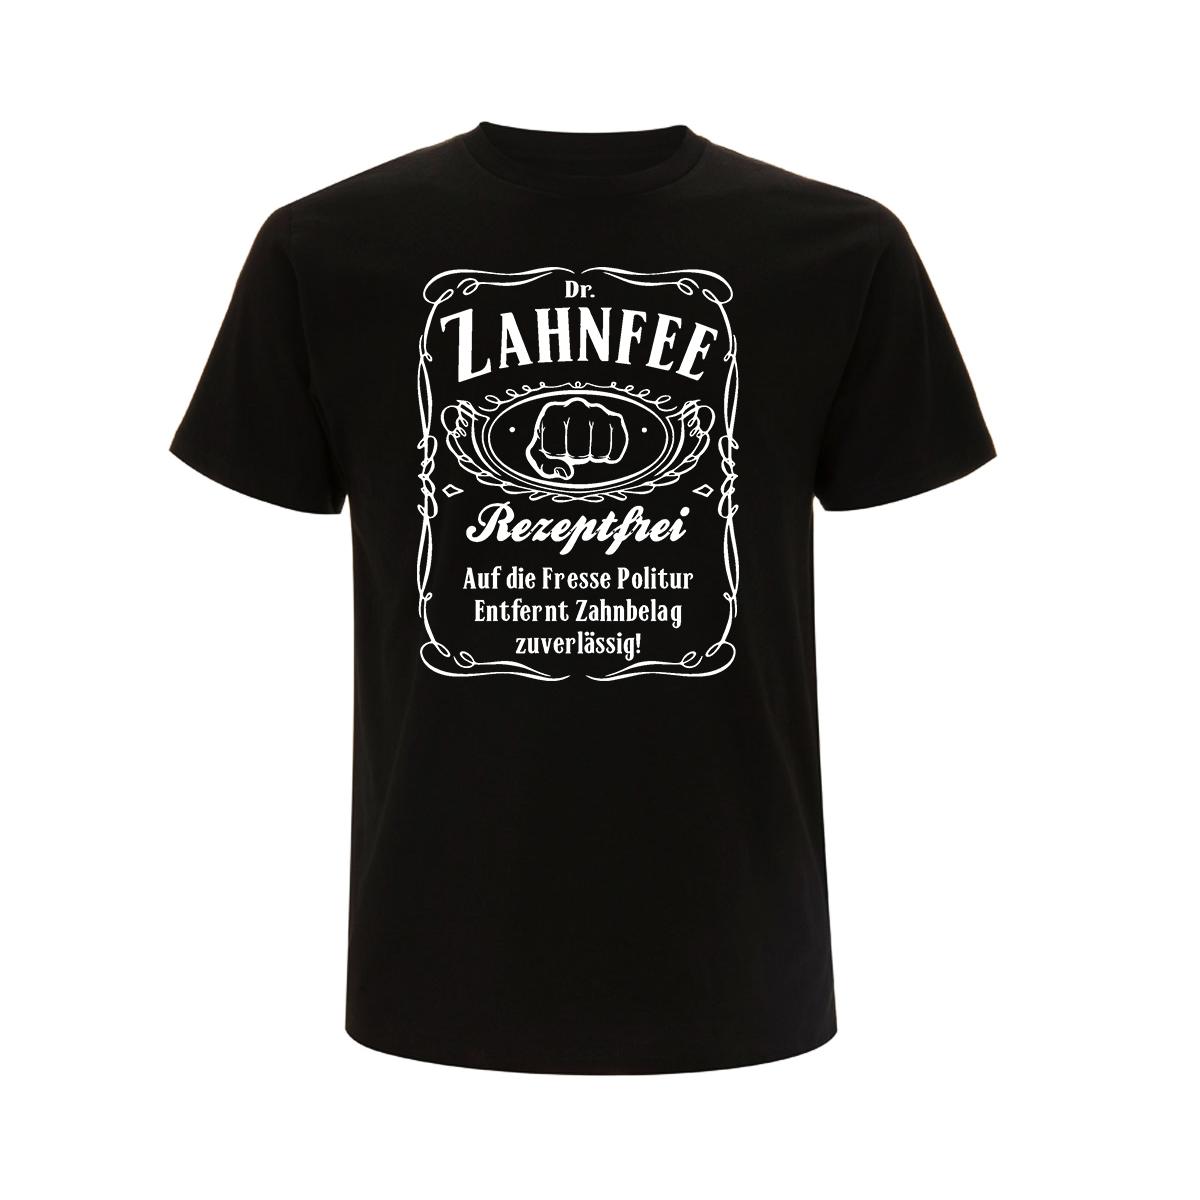 Dr. Zahnfee - Männer T-Shirt - schwarz